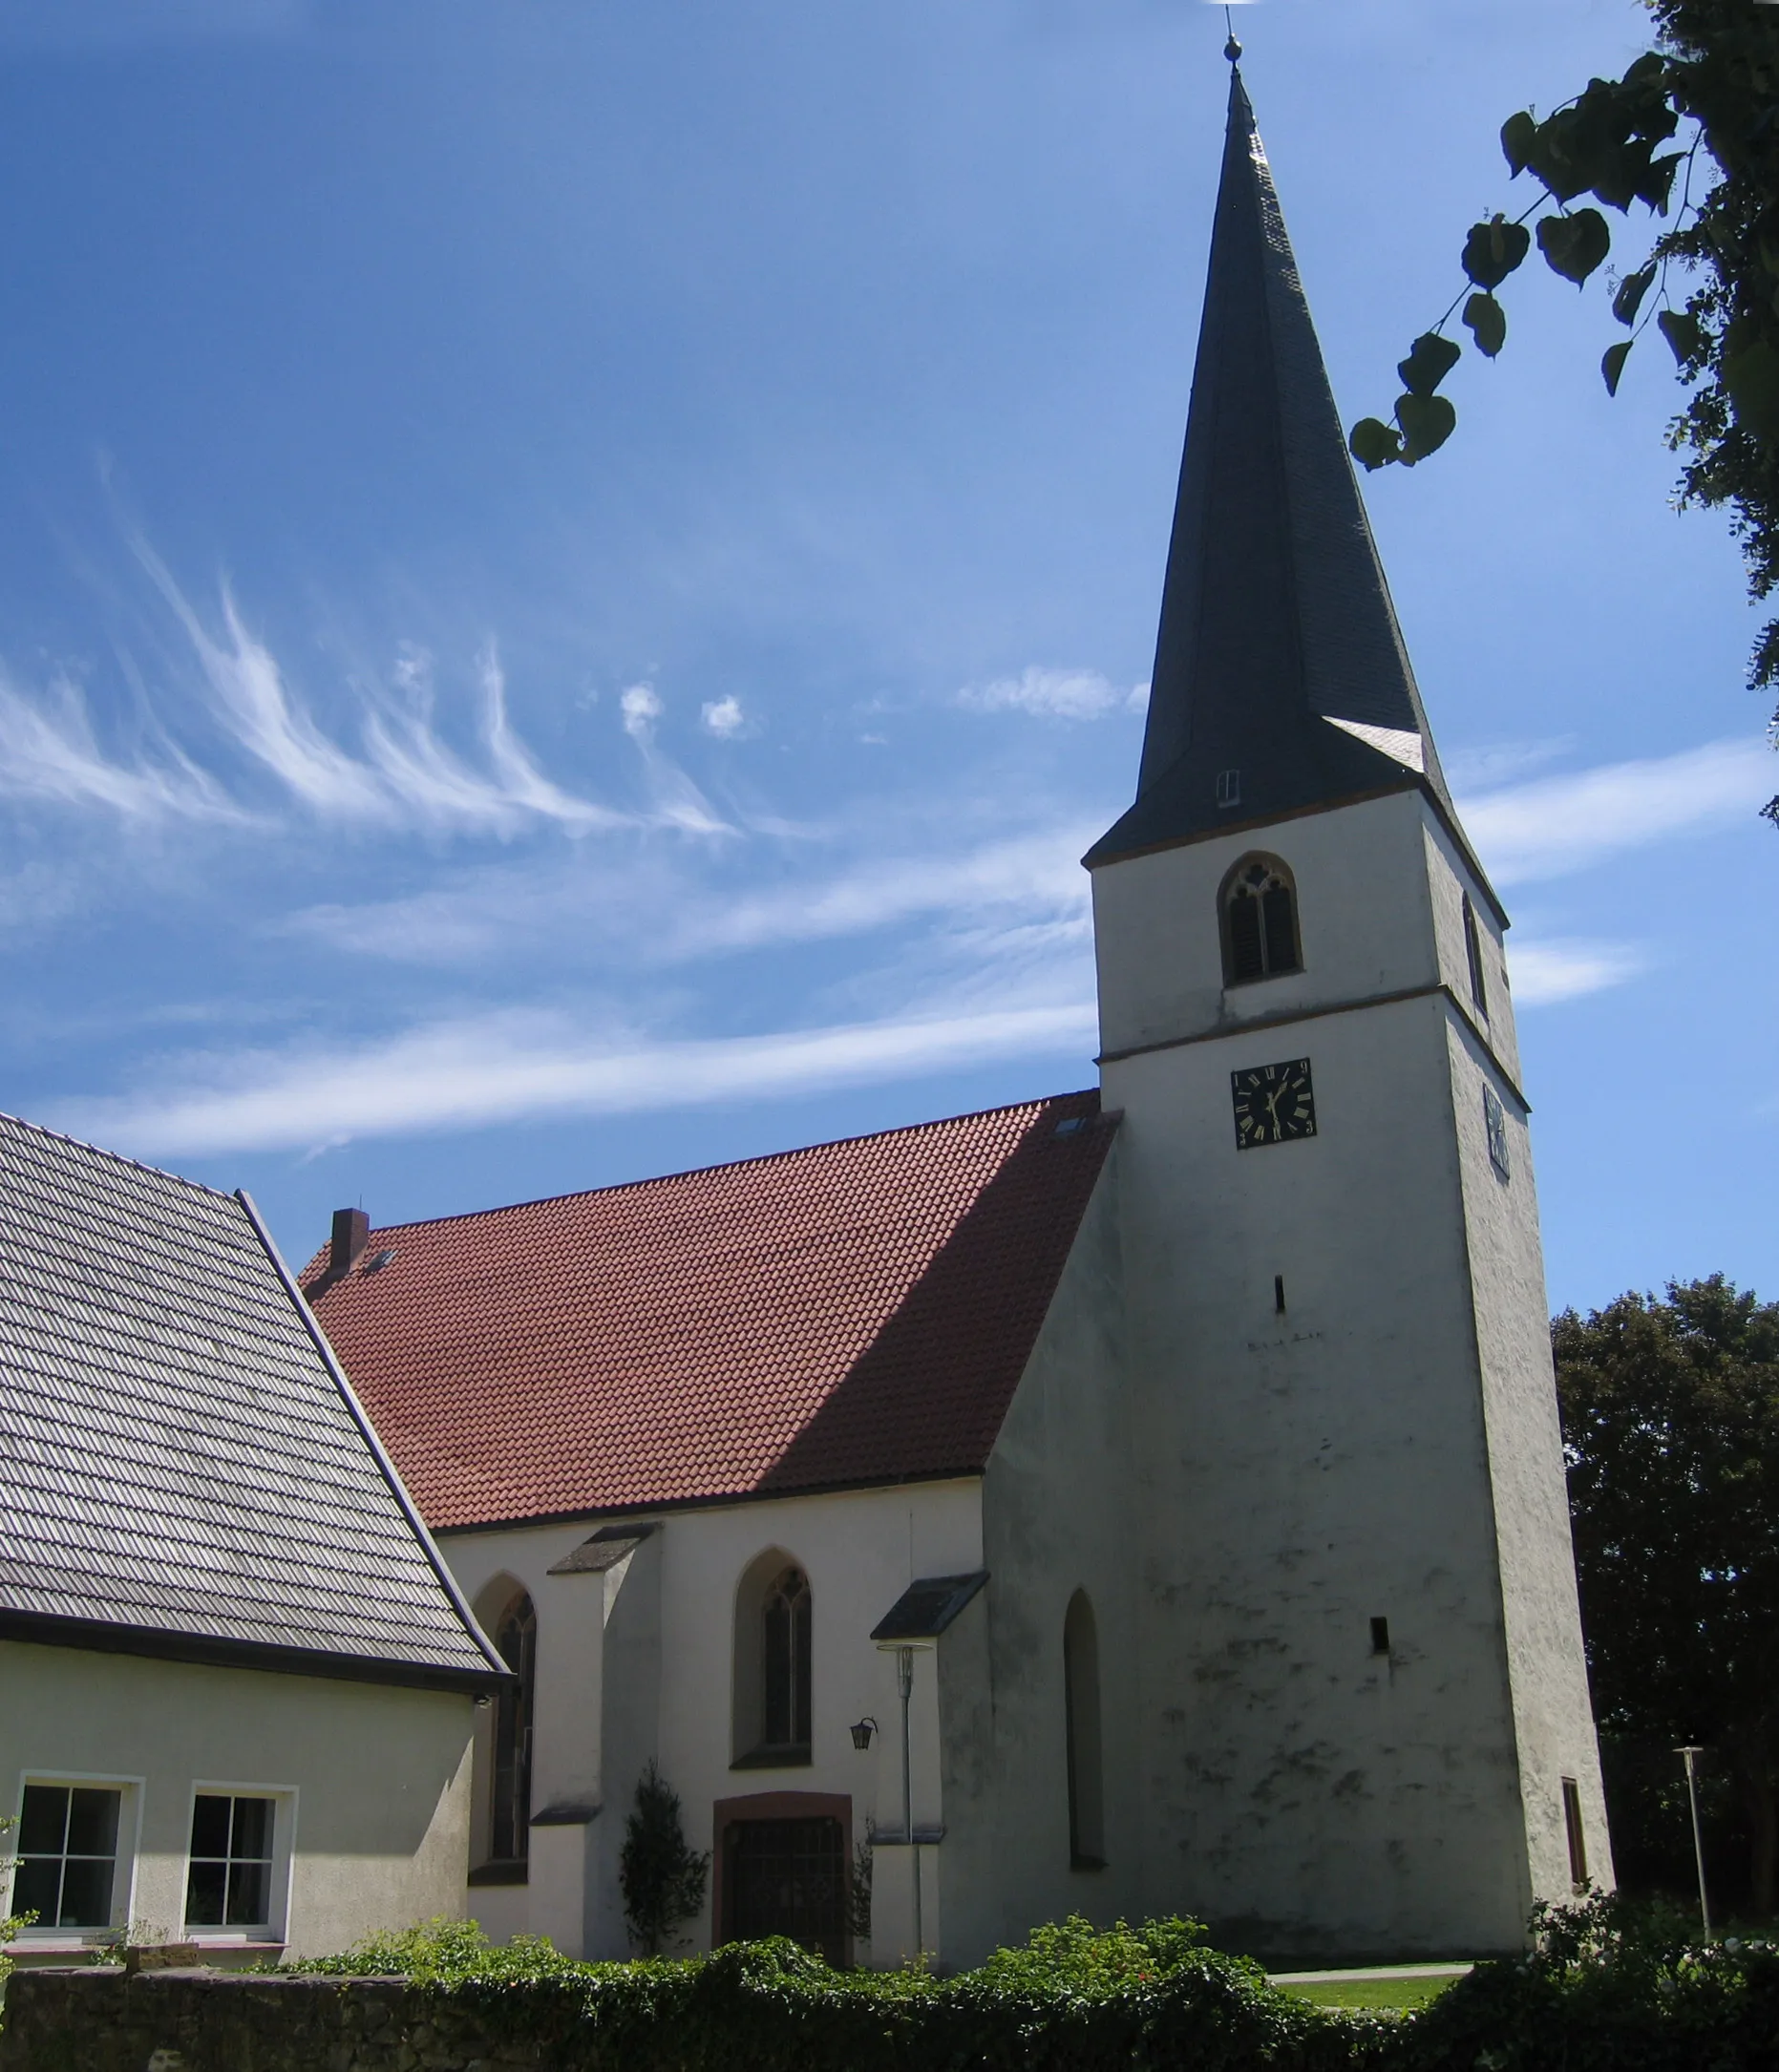 Photo showing: Blasheim church in Lübbecke, District of Minden-Lübbecke, North Rhine-Westphalia, Germany.